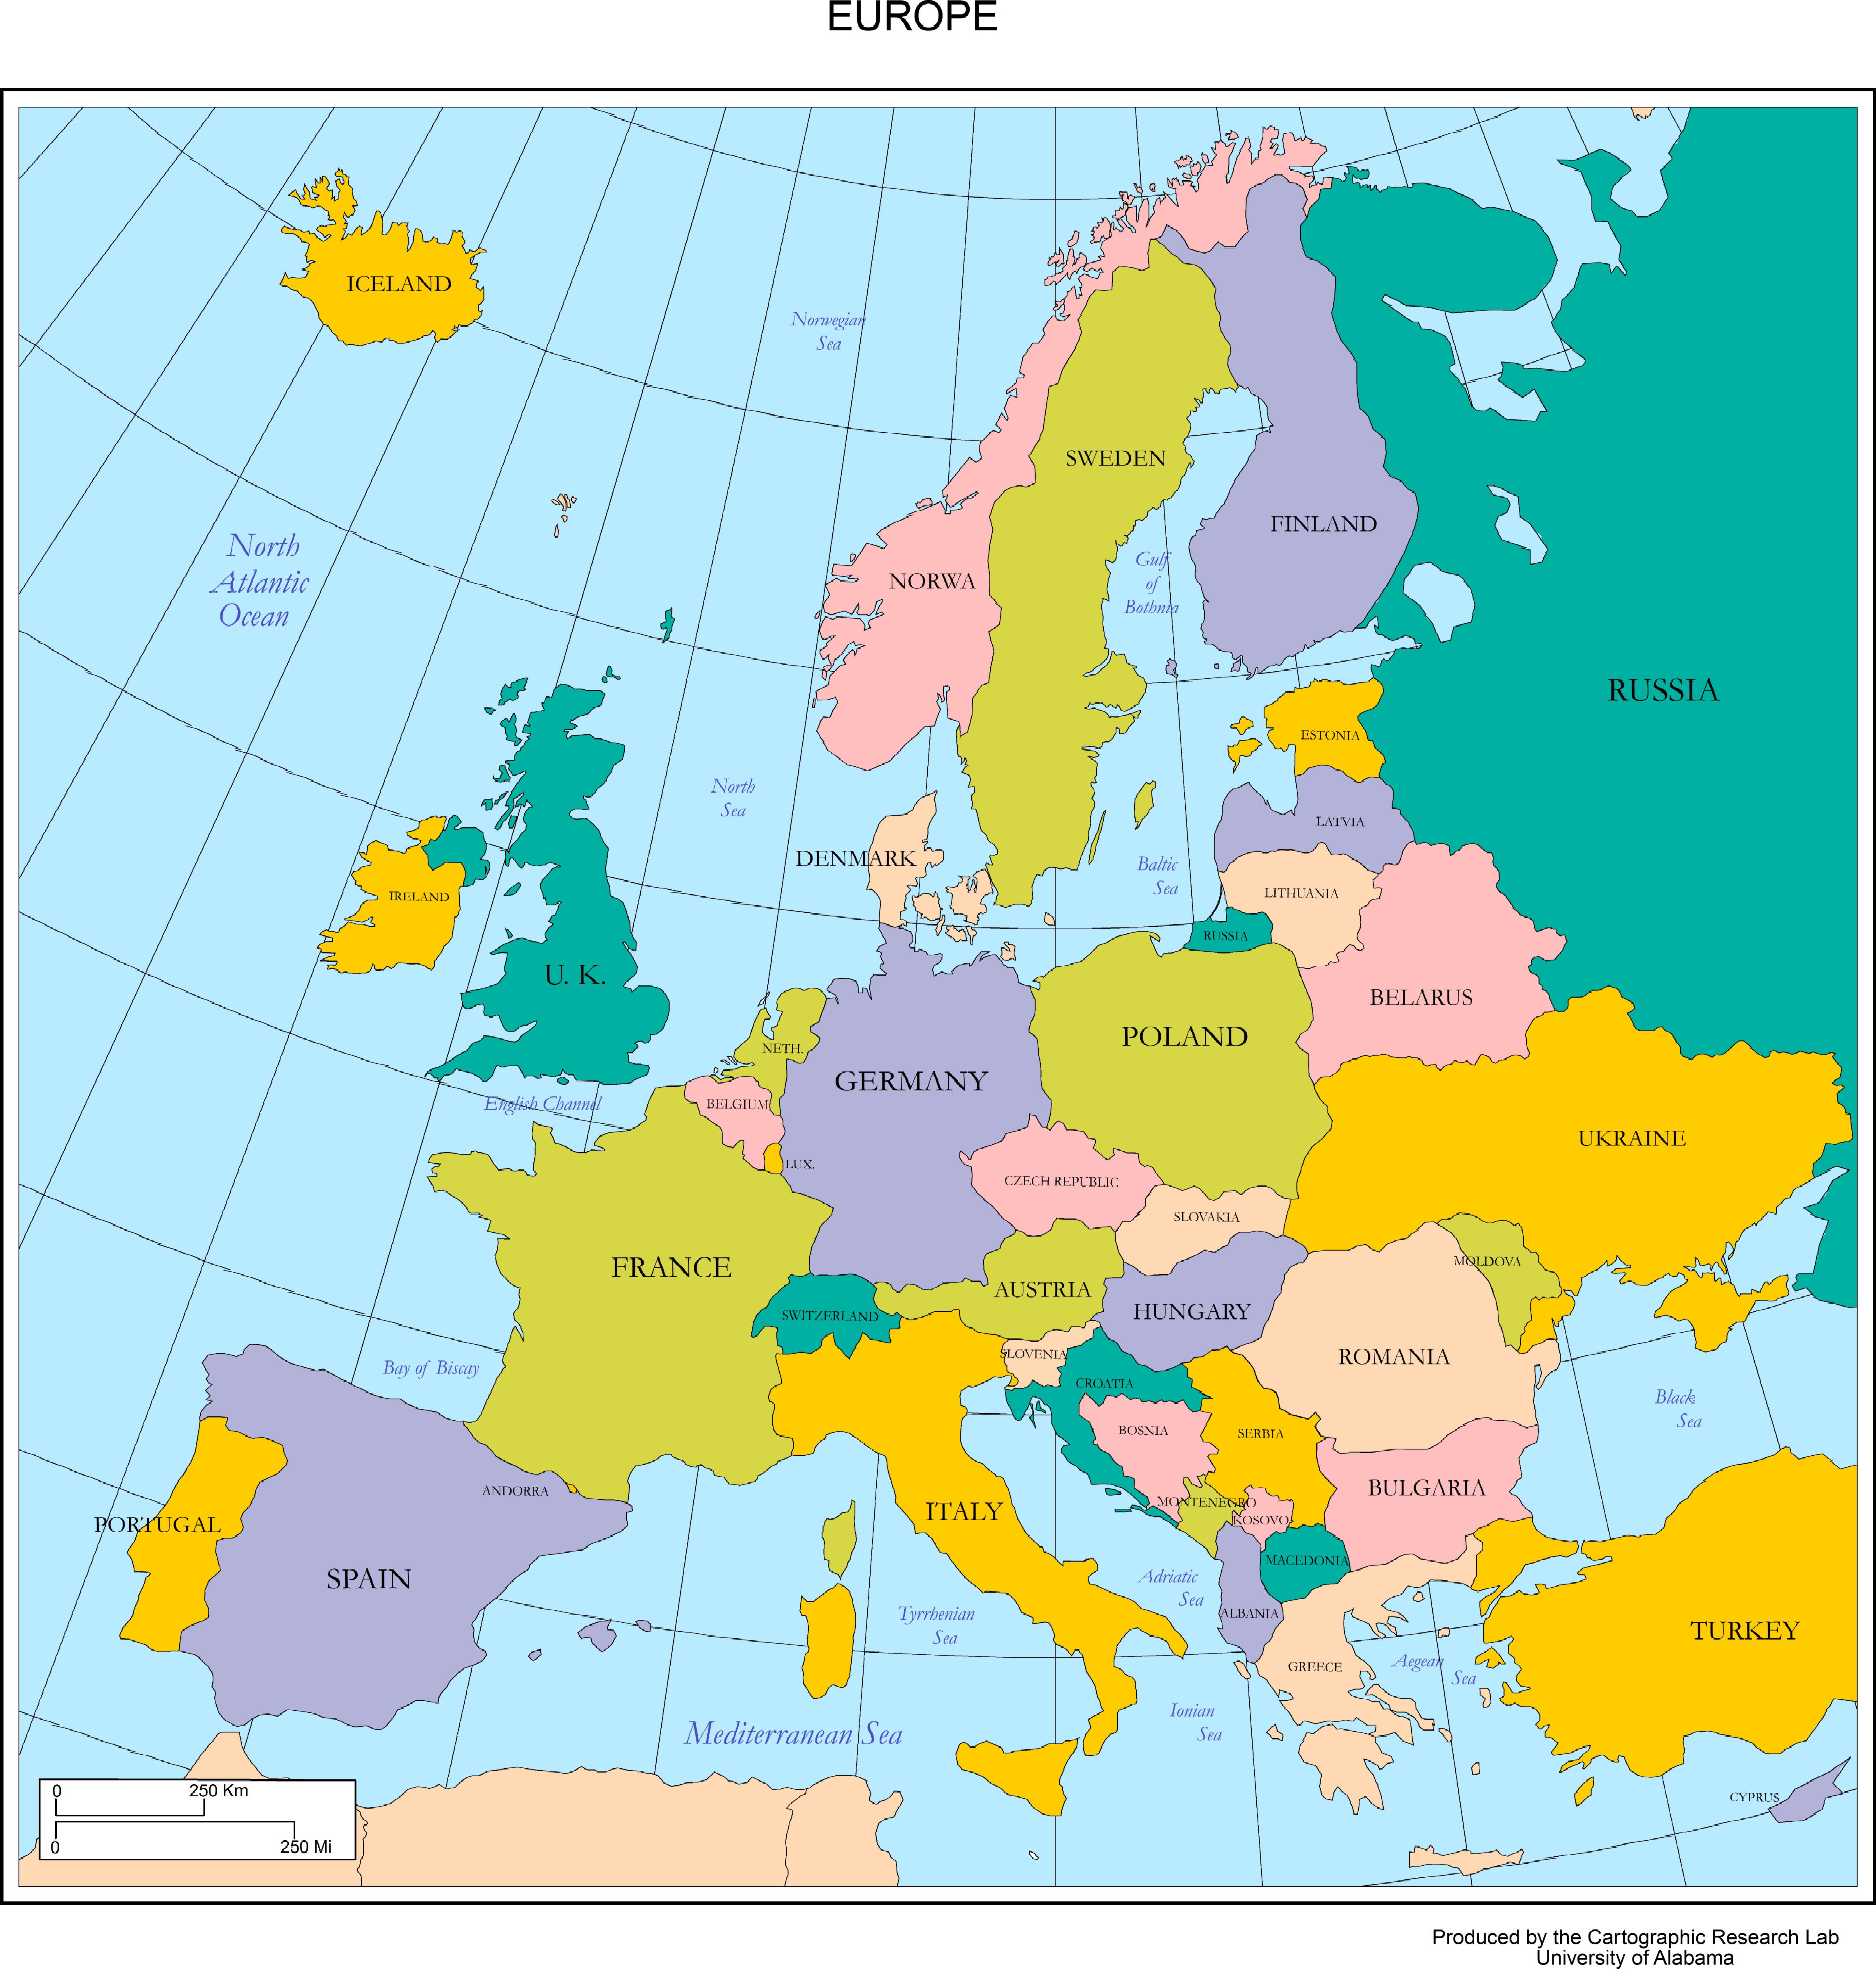 欧洲地图全图高清晰图片